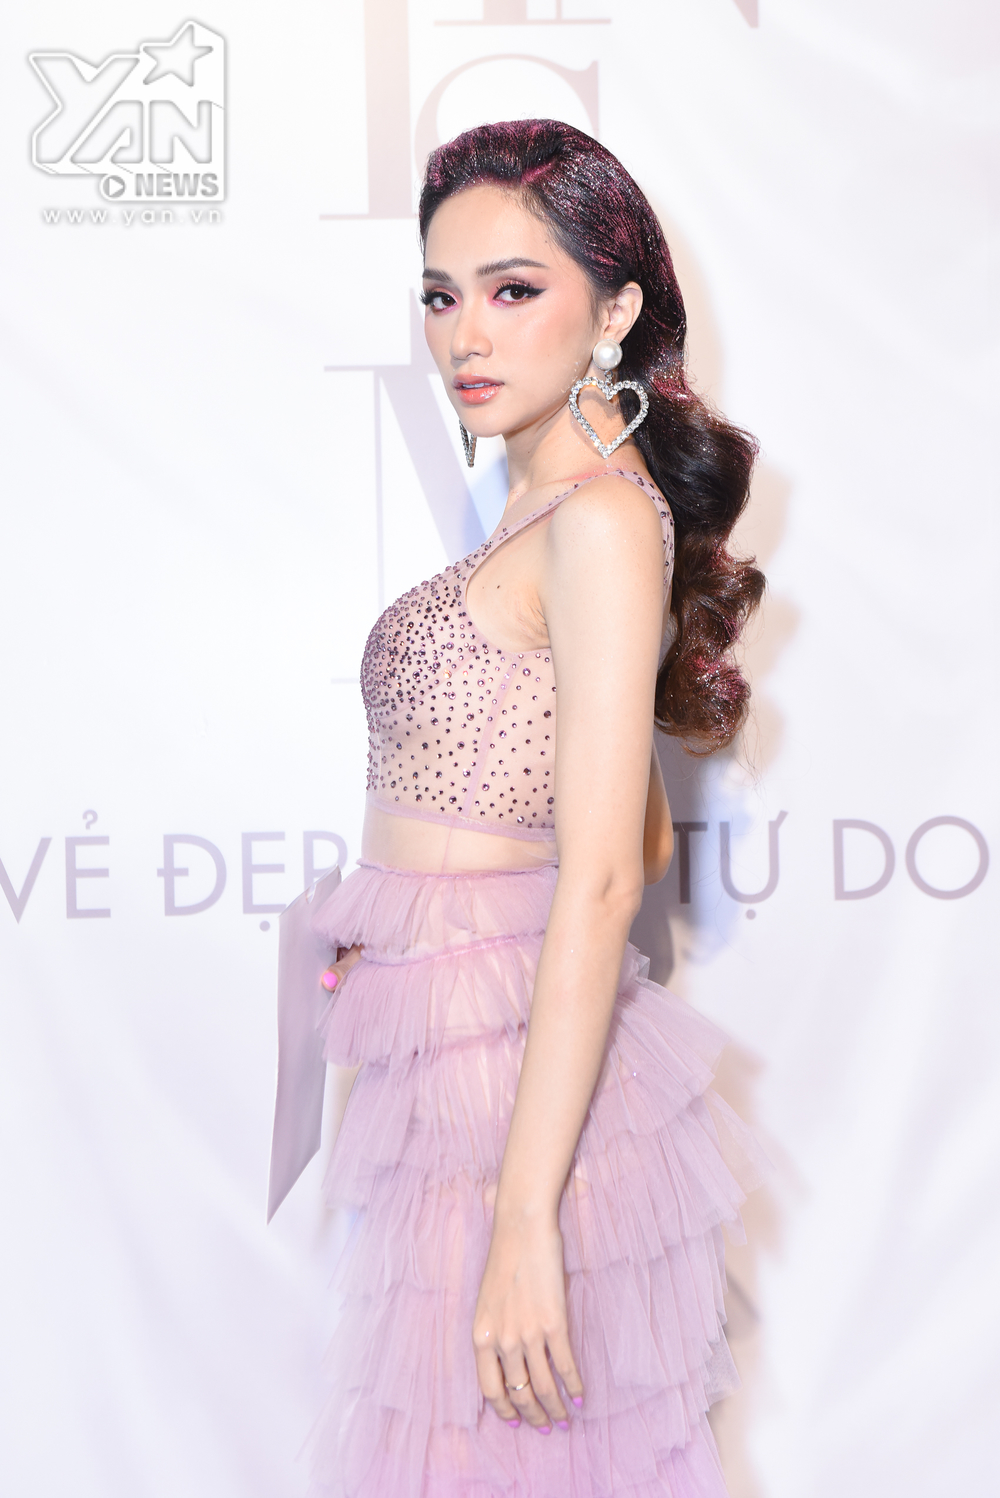 
Hoa hậu Hương Giang xuất hiện với bộ váy màu hồng nhạt xuyên thấu vô cùng sexy, gợi cảm "đốt mắt" người đối diện.